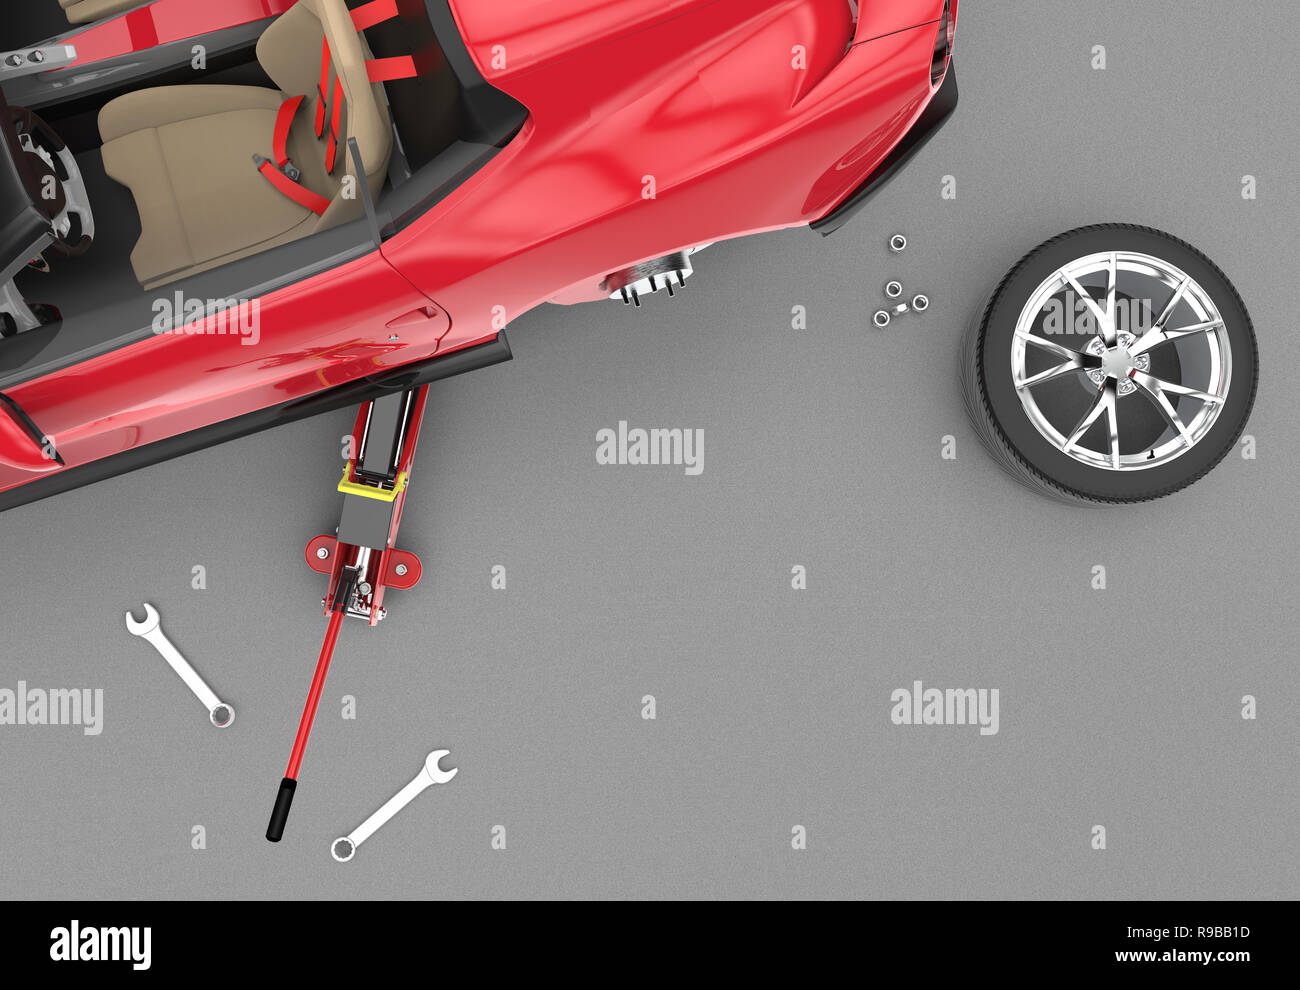 Vue de dessus d'une voiture rouge levé avec un cric hydraulique, 3D illustration Banque D'Images